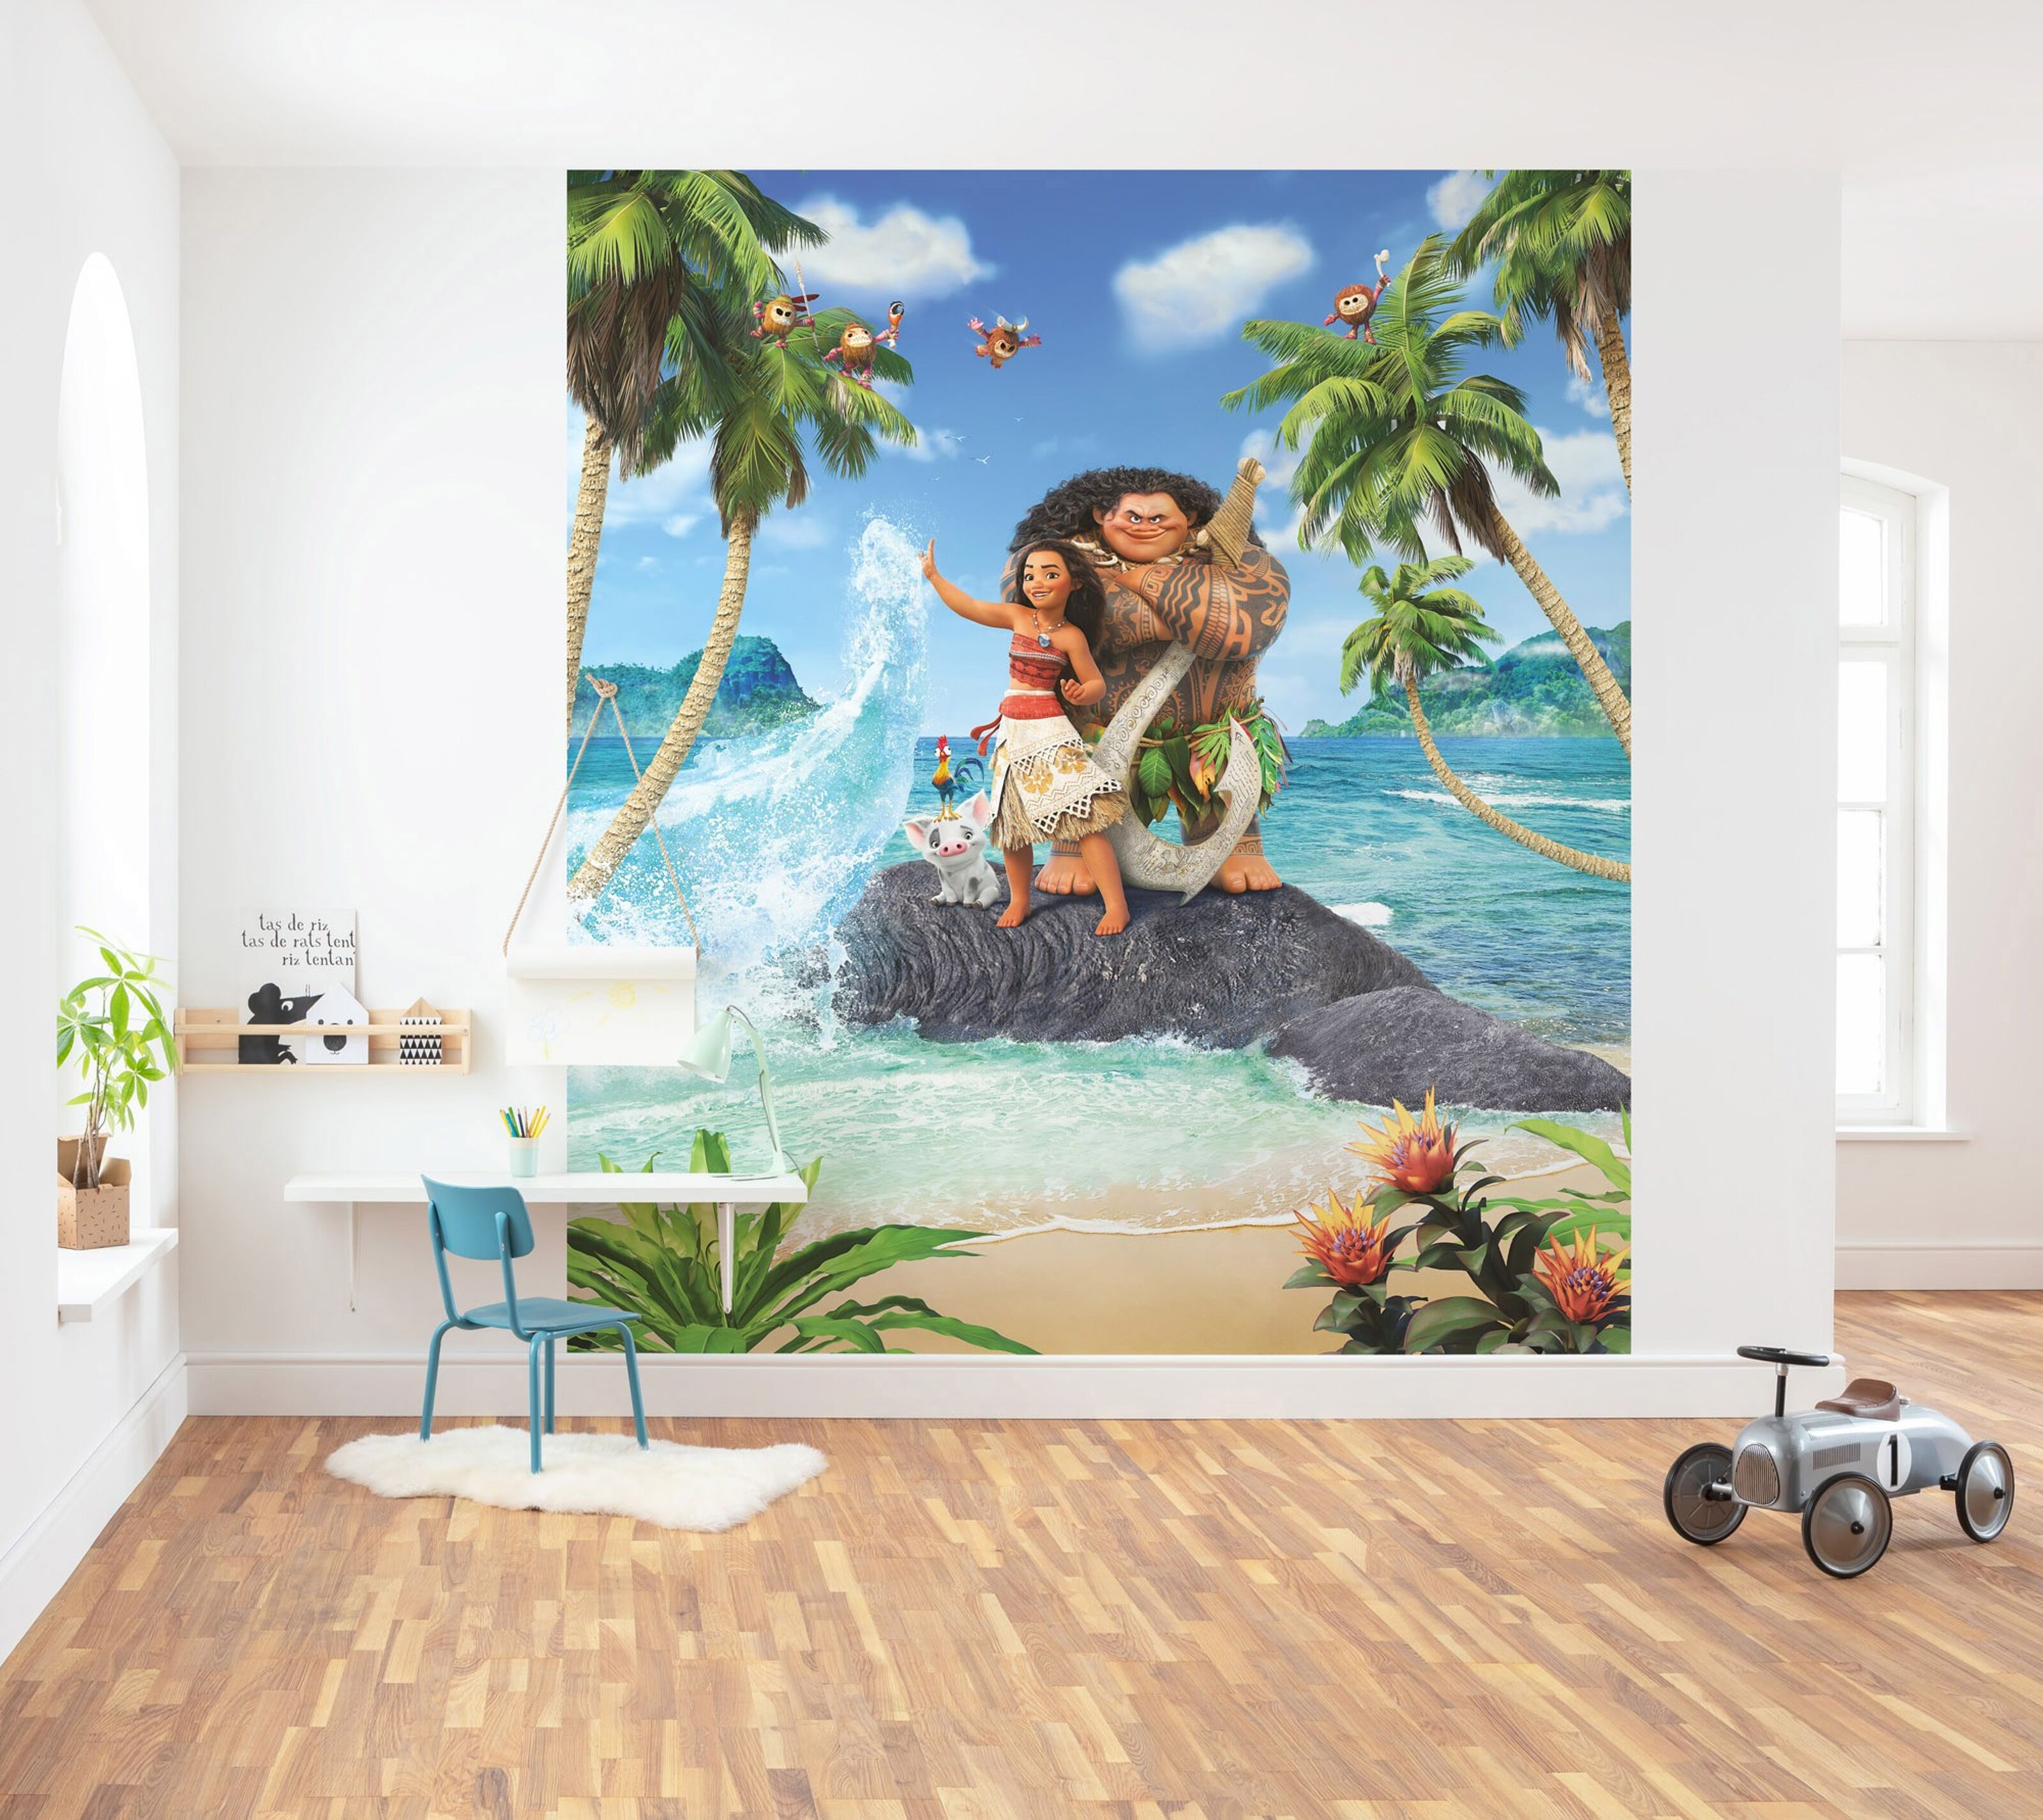 Kaufen Sie Fototapete - 280 Beach Moana - Größe 250 cm x Vlies zu Großhandelspreisen